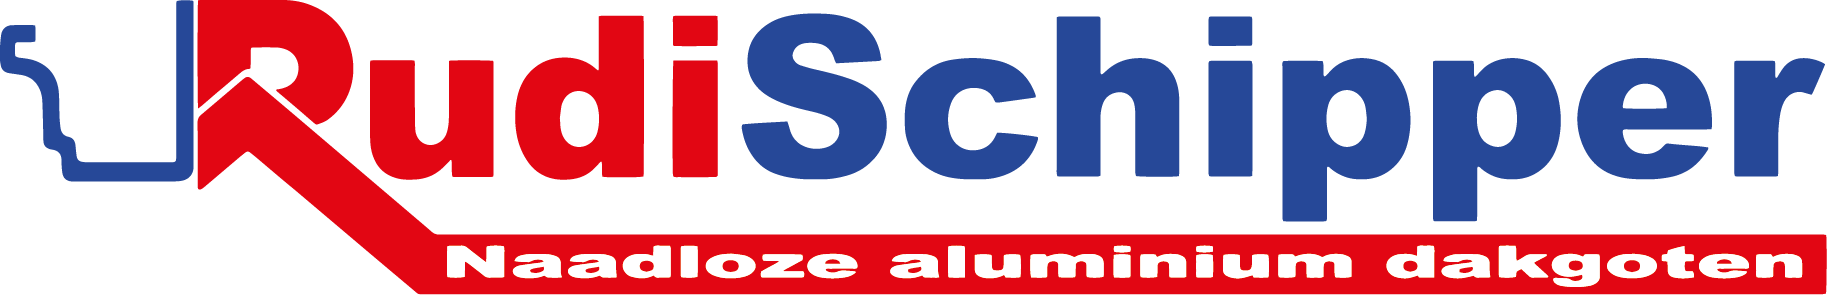 Logo Rudi Schipper dakgoten